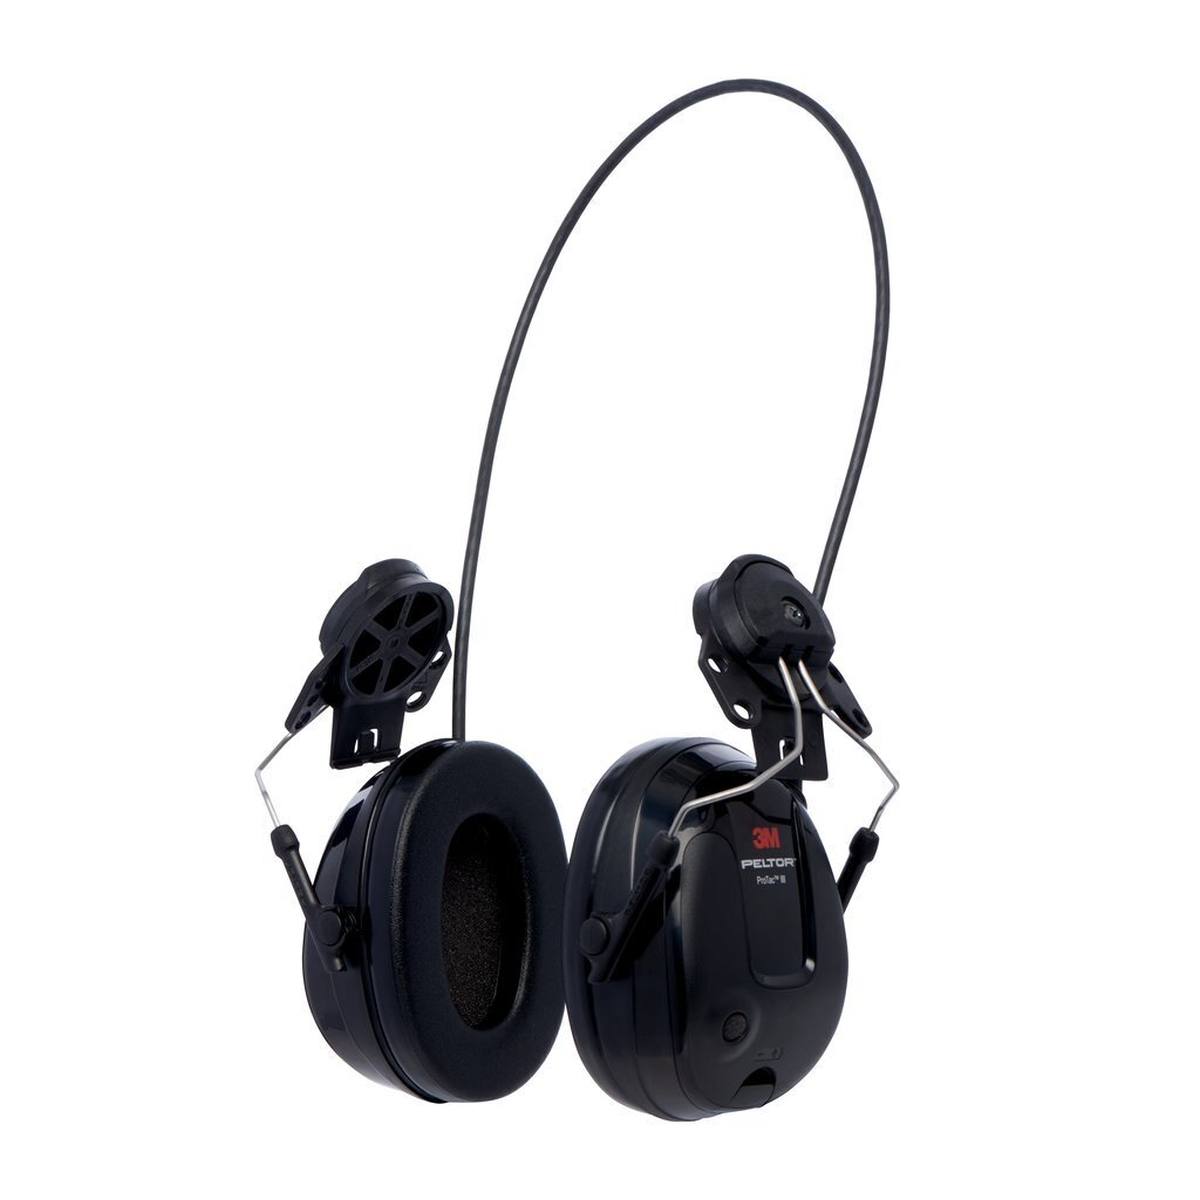 3M PELTOR Auricular de protección auditiva ProTac III Slim, negro, versión casco, con tecnología de atenuación activa en función del nivel para percibir el ruido ambiente, SNR=25 dB, negro